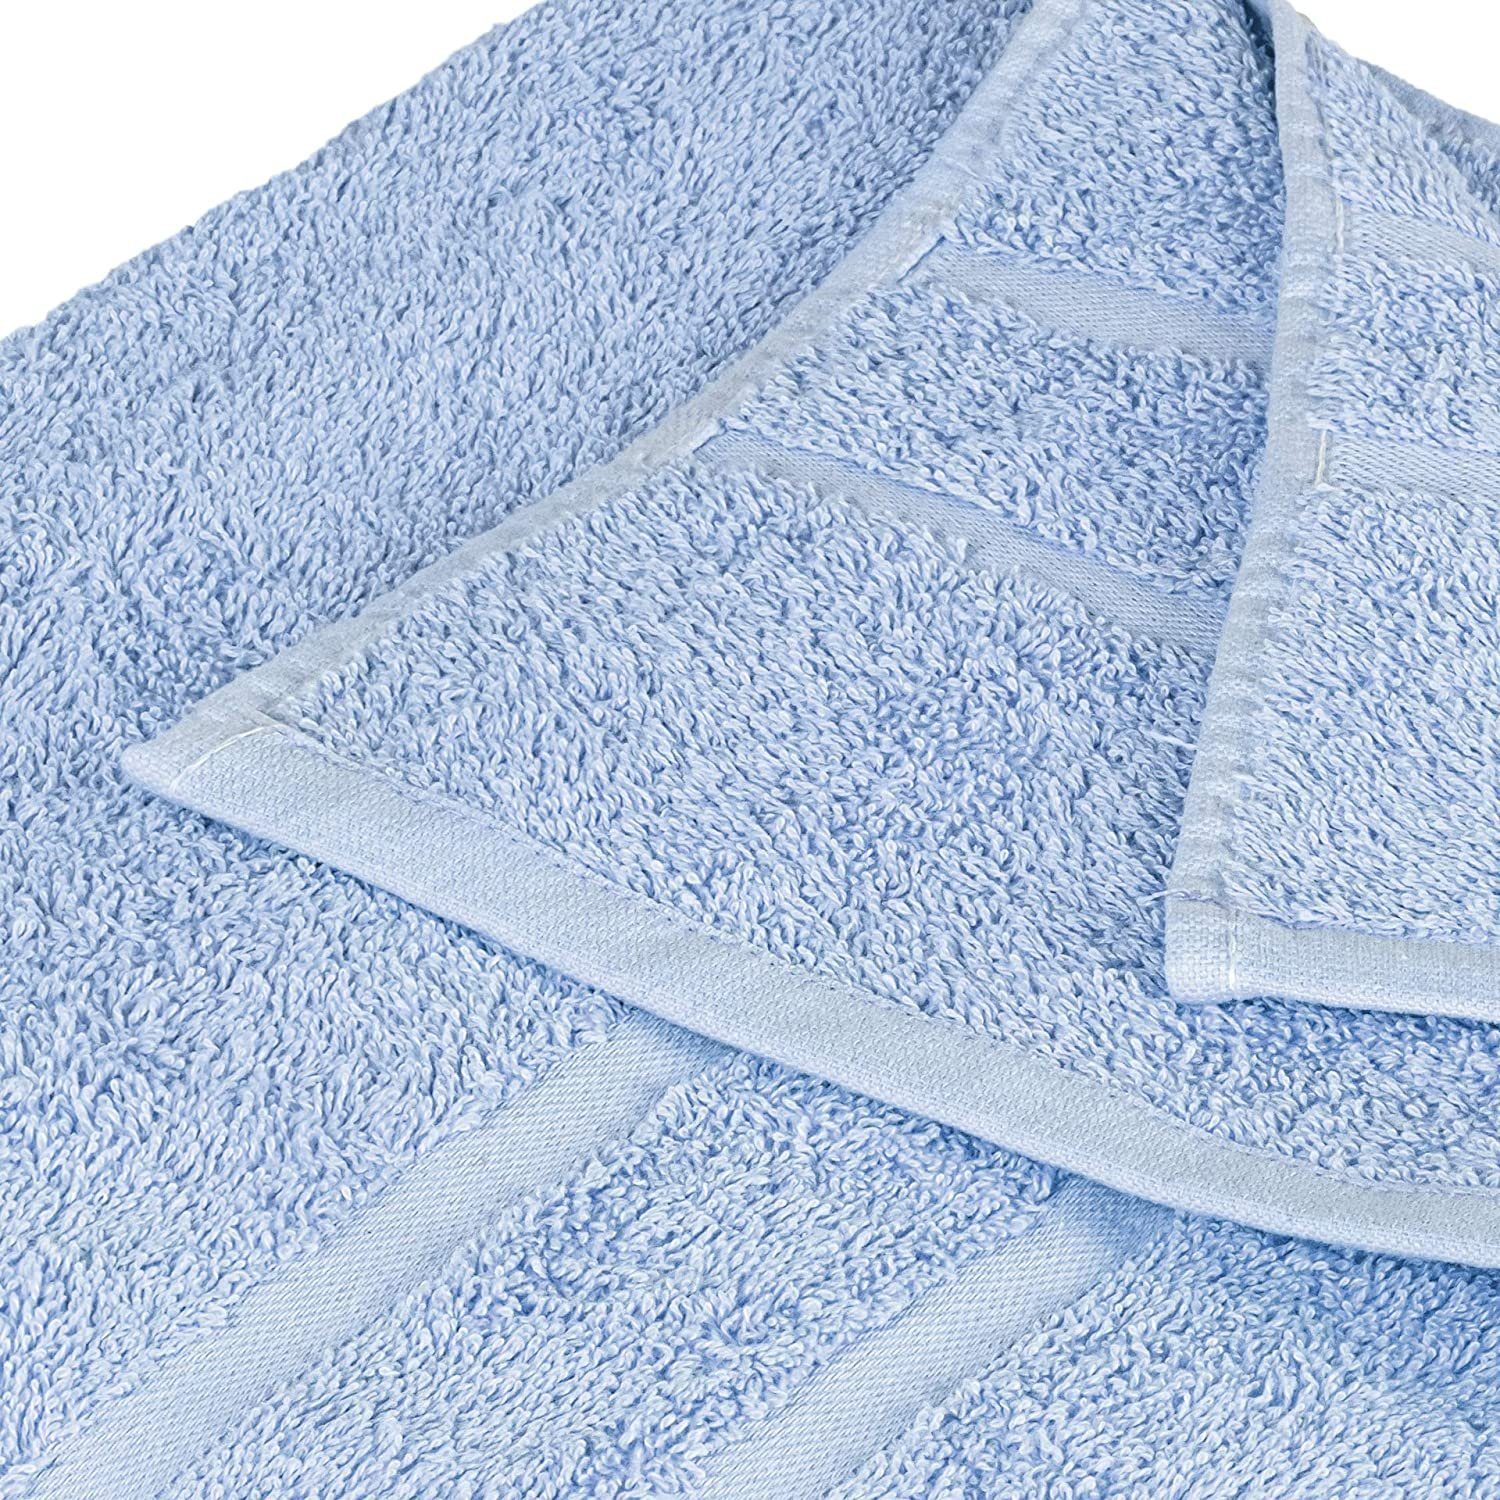 StickandShine Handtuch 2er Set (2 100% in Baumwolle 100% Handtuch 500GSM Frottee Frottee cm 500g/m² 50x100 Stück), Hellblau Baumwolle Premium aus